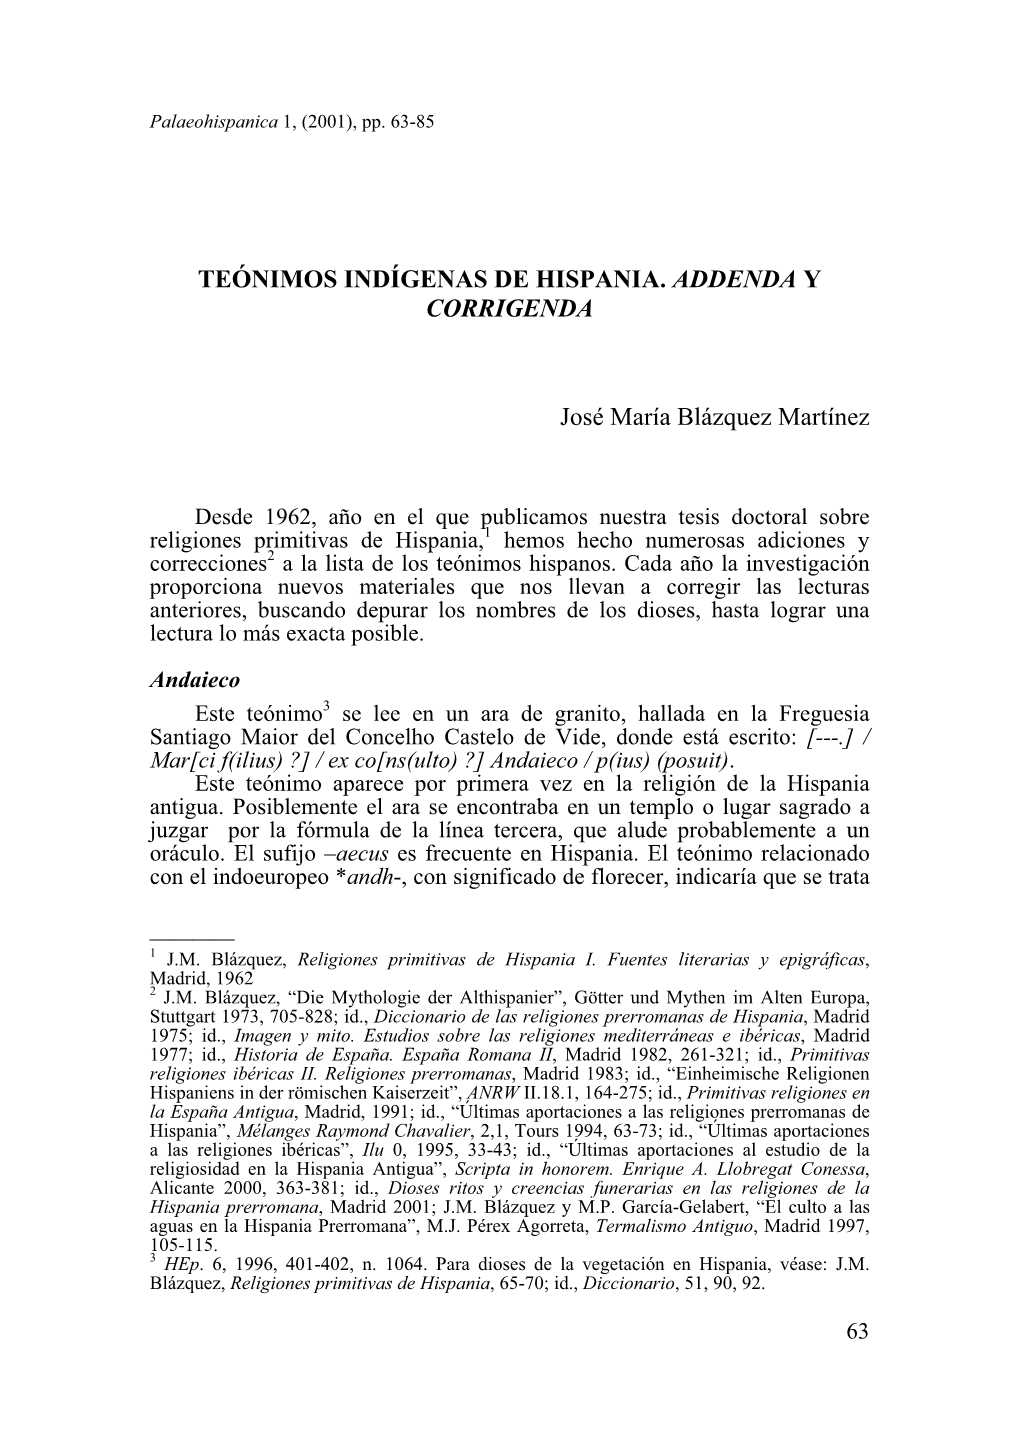 7. Teónimos Indígenas De Hispania. Addenda Y Corrigenda, Por José